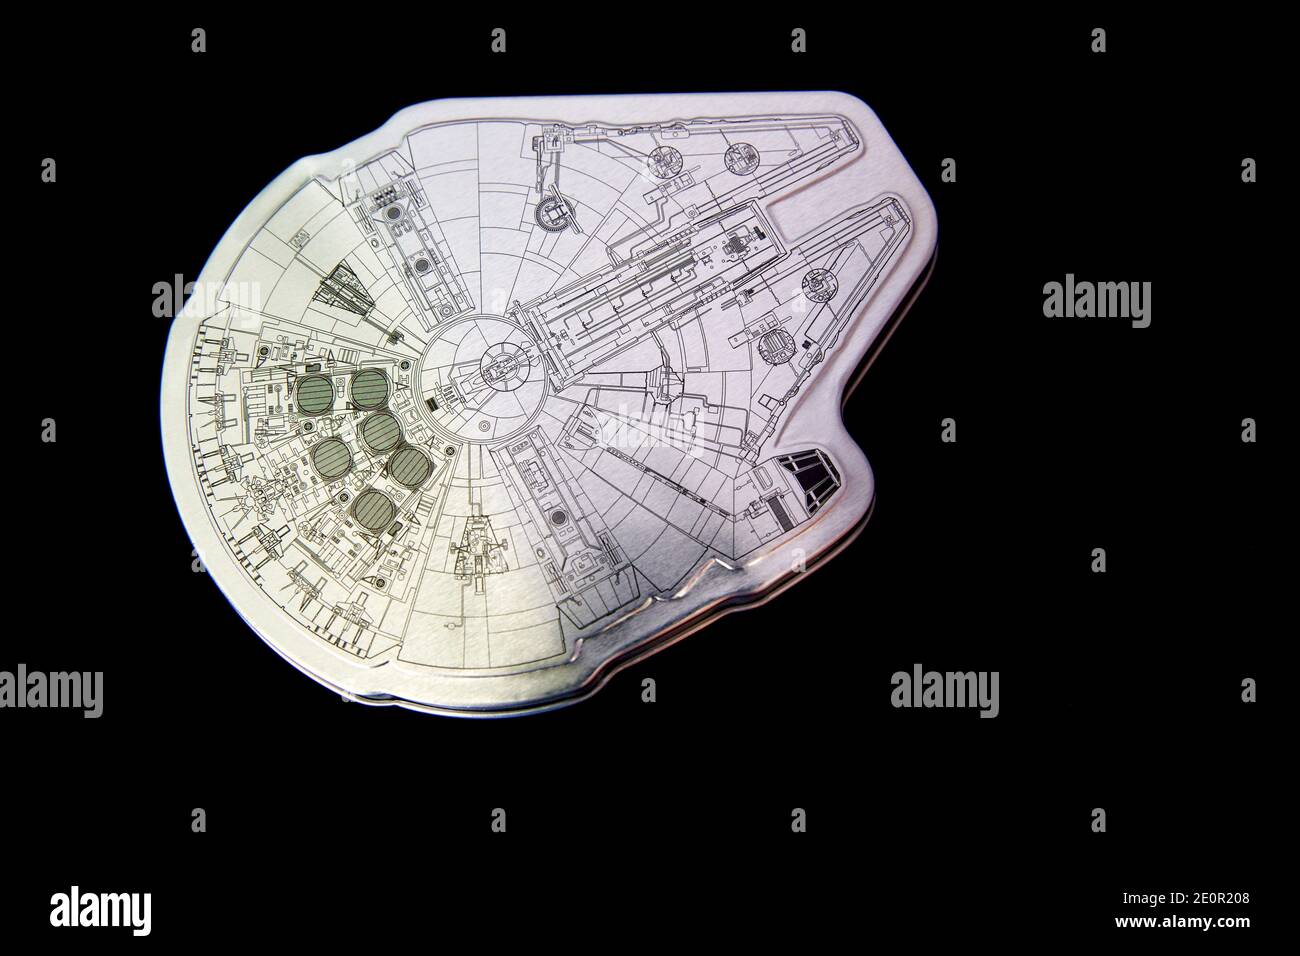 Star Wars Millennium Falcon Dose mit einem 201-teiligen Puzzle puzzle Stockfoto